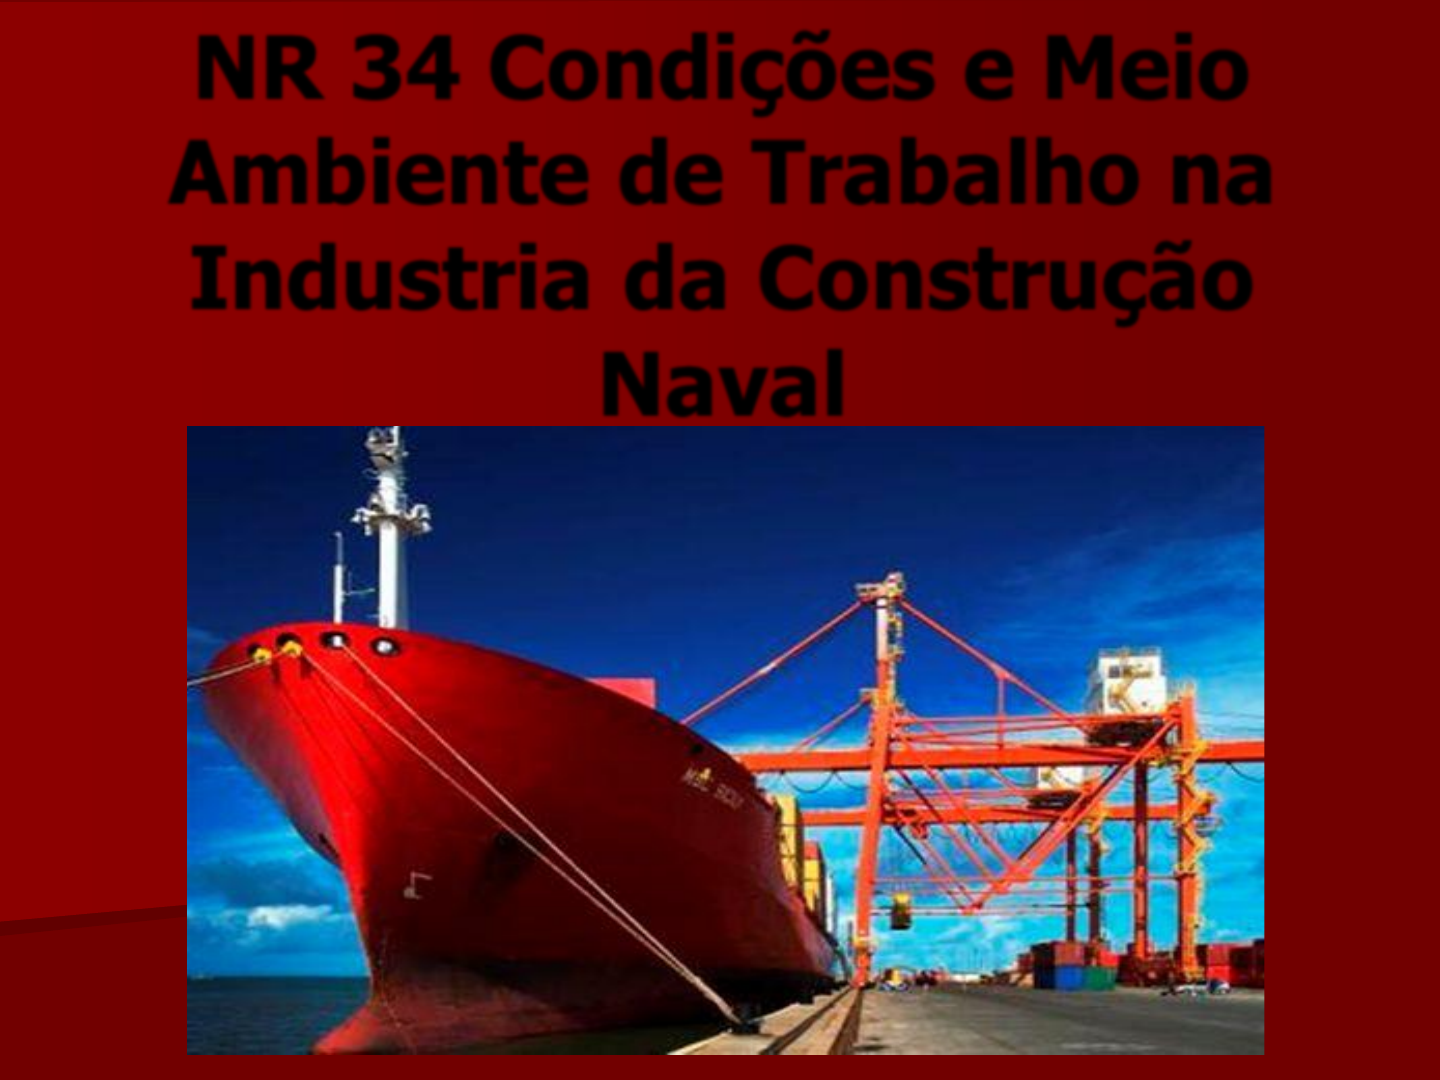 NR-34: Resumo da norma da indústria naval! 🚢